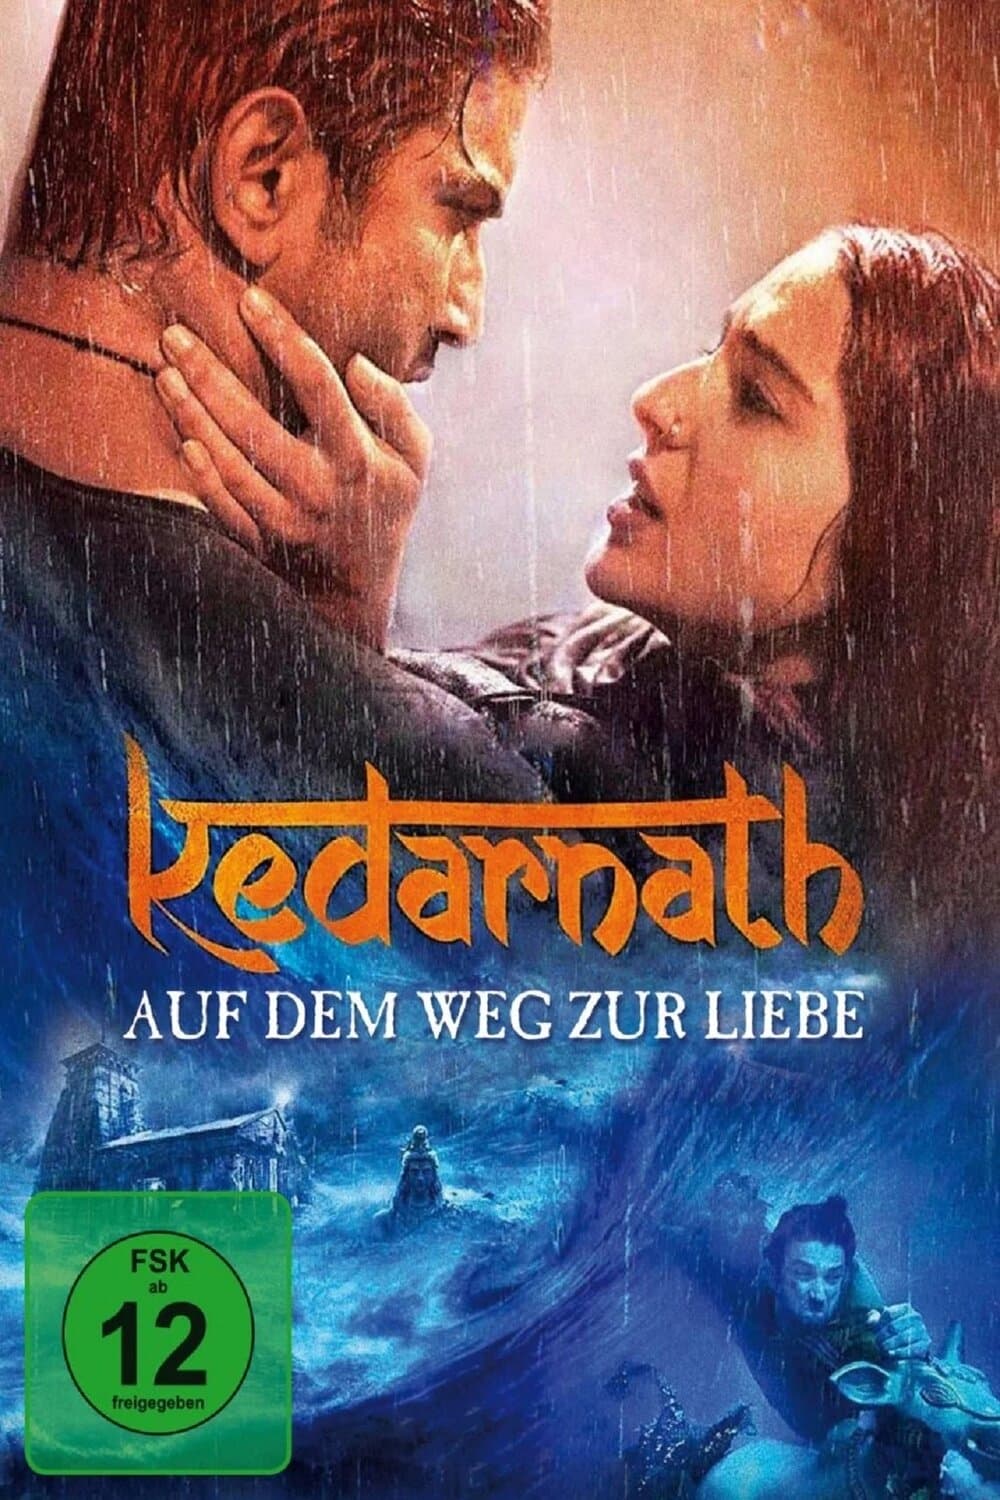 Kedarnath-2018-Bollywood-Hindi-Movie-HD-ESub